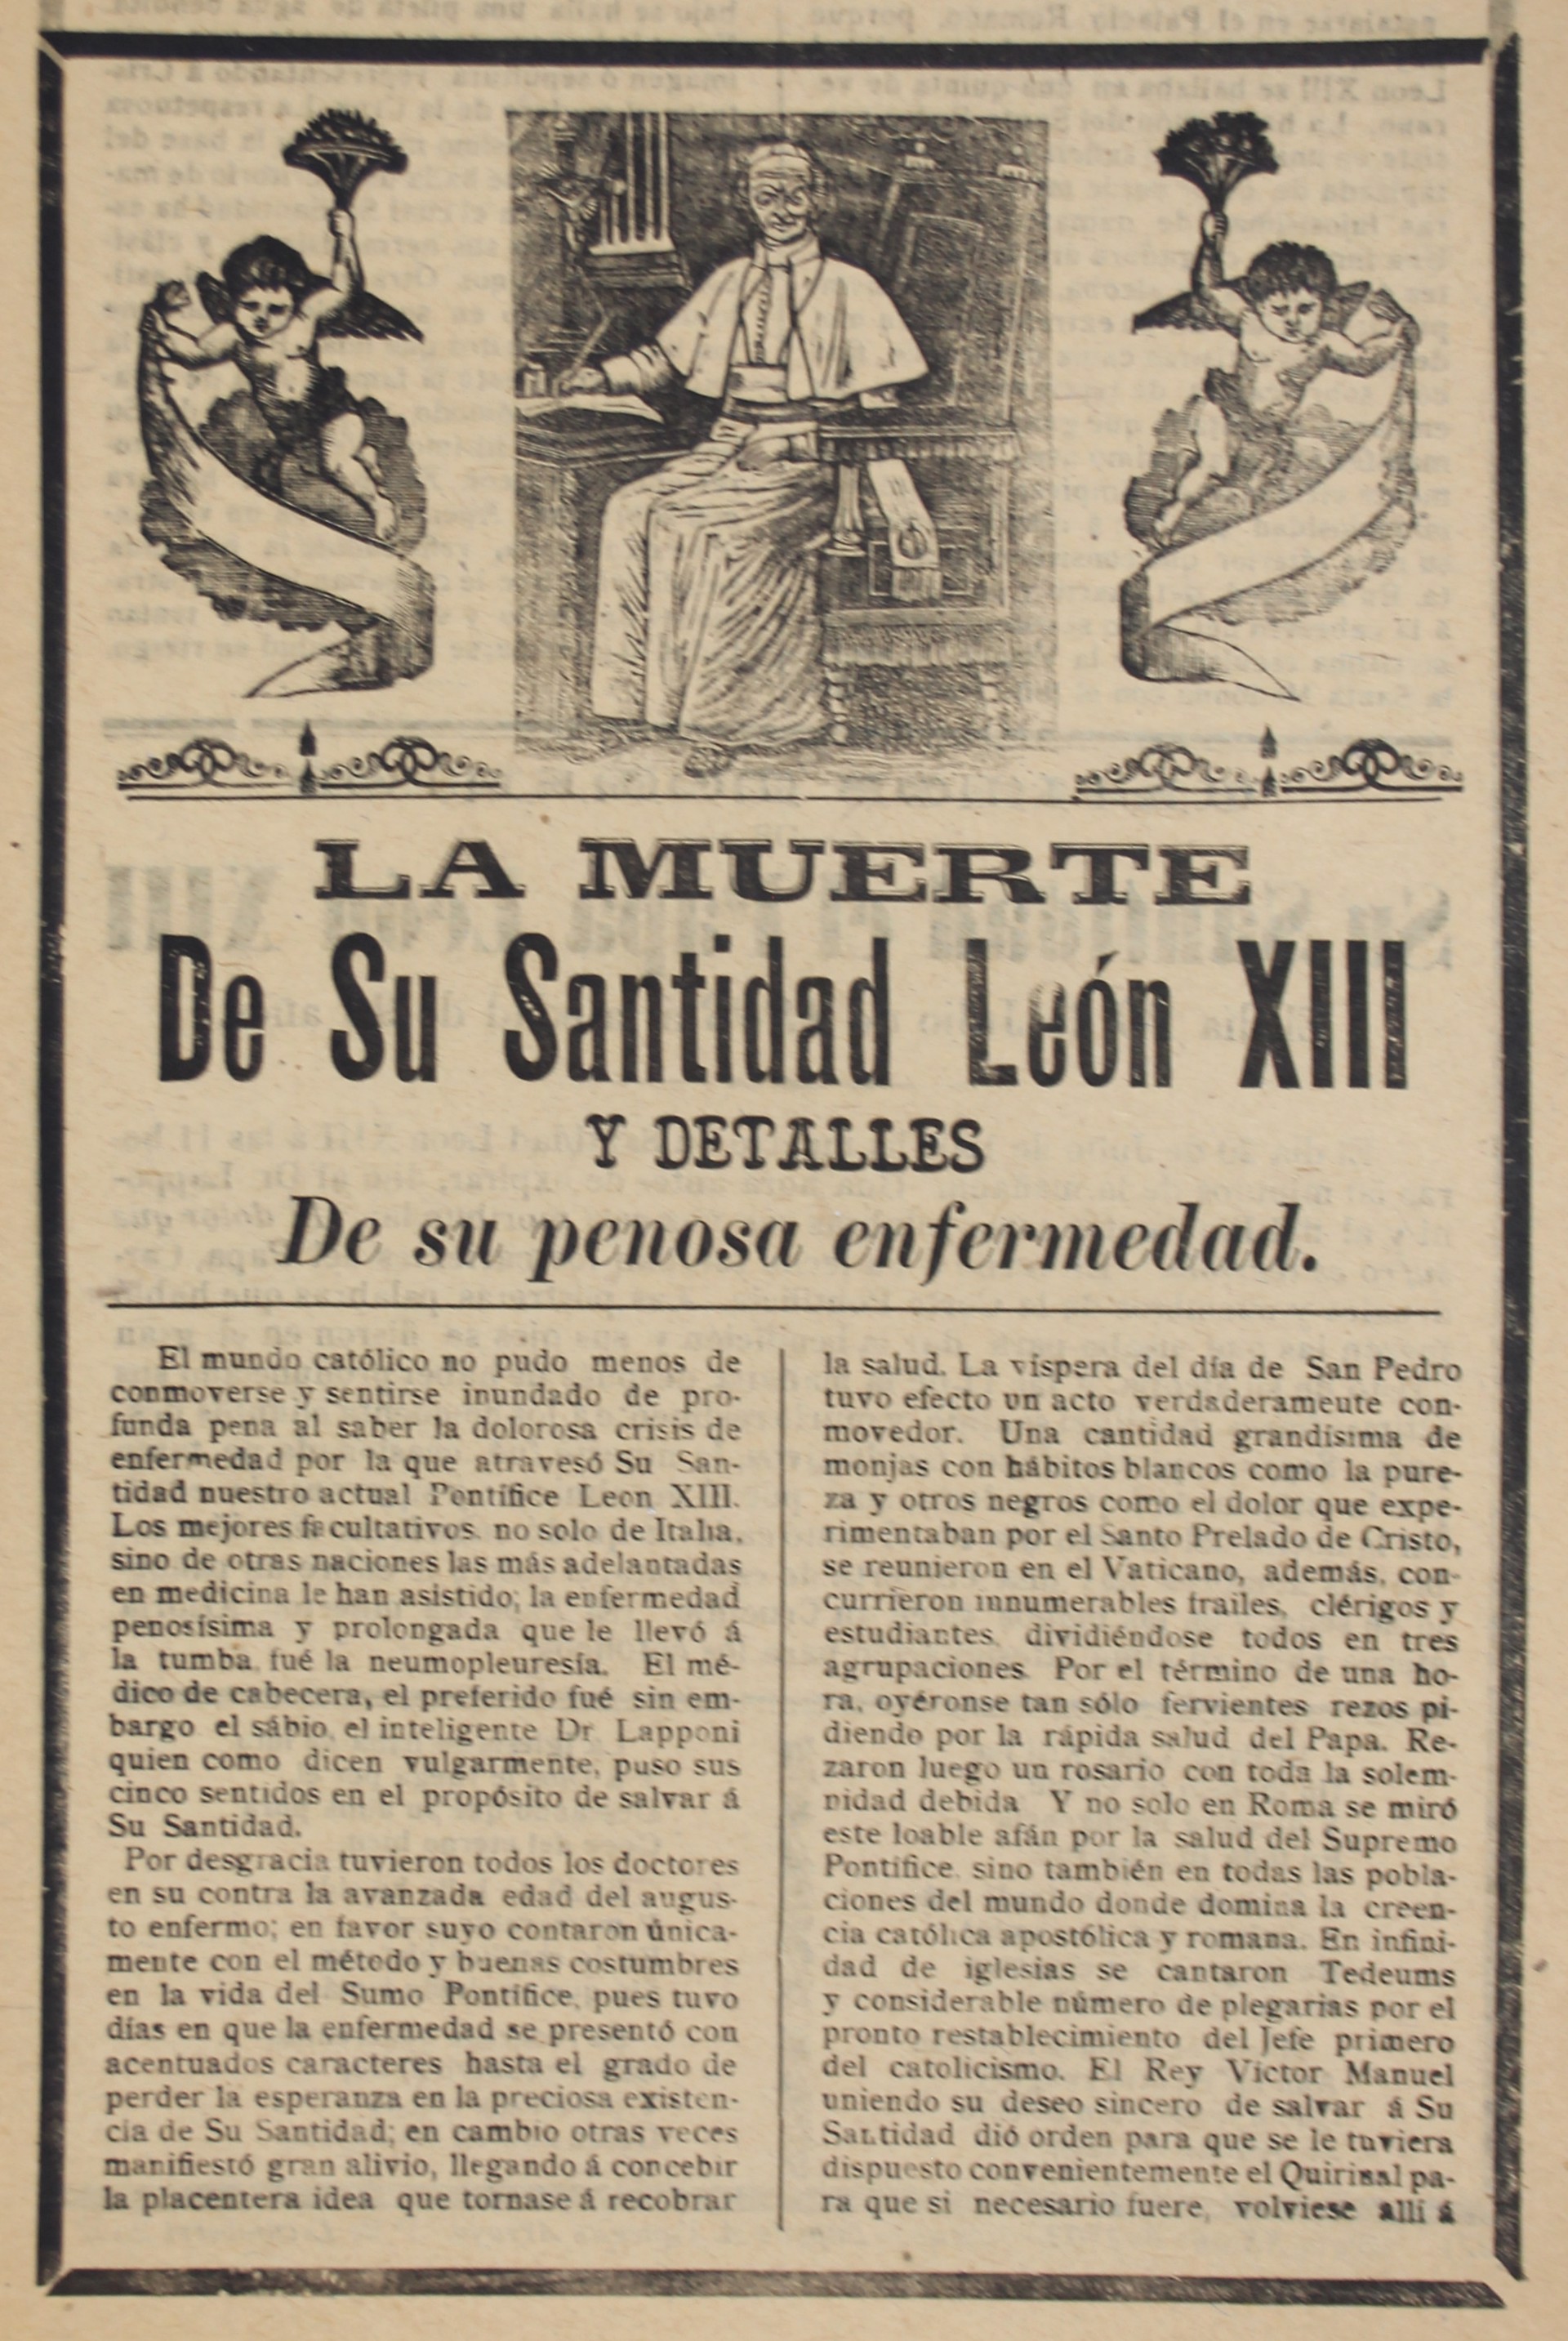 La Muerte de Su Santidad Leon XIII by José Guadalupe Posada